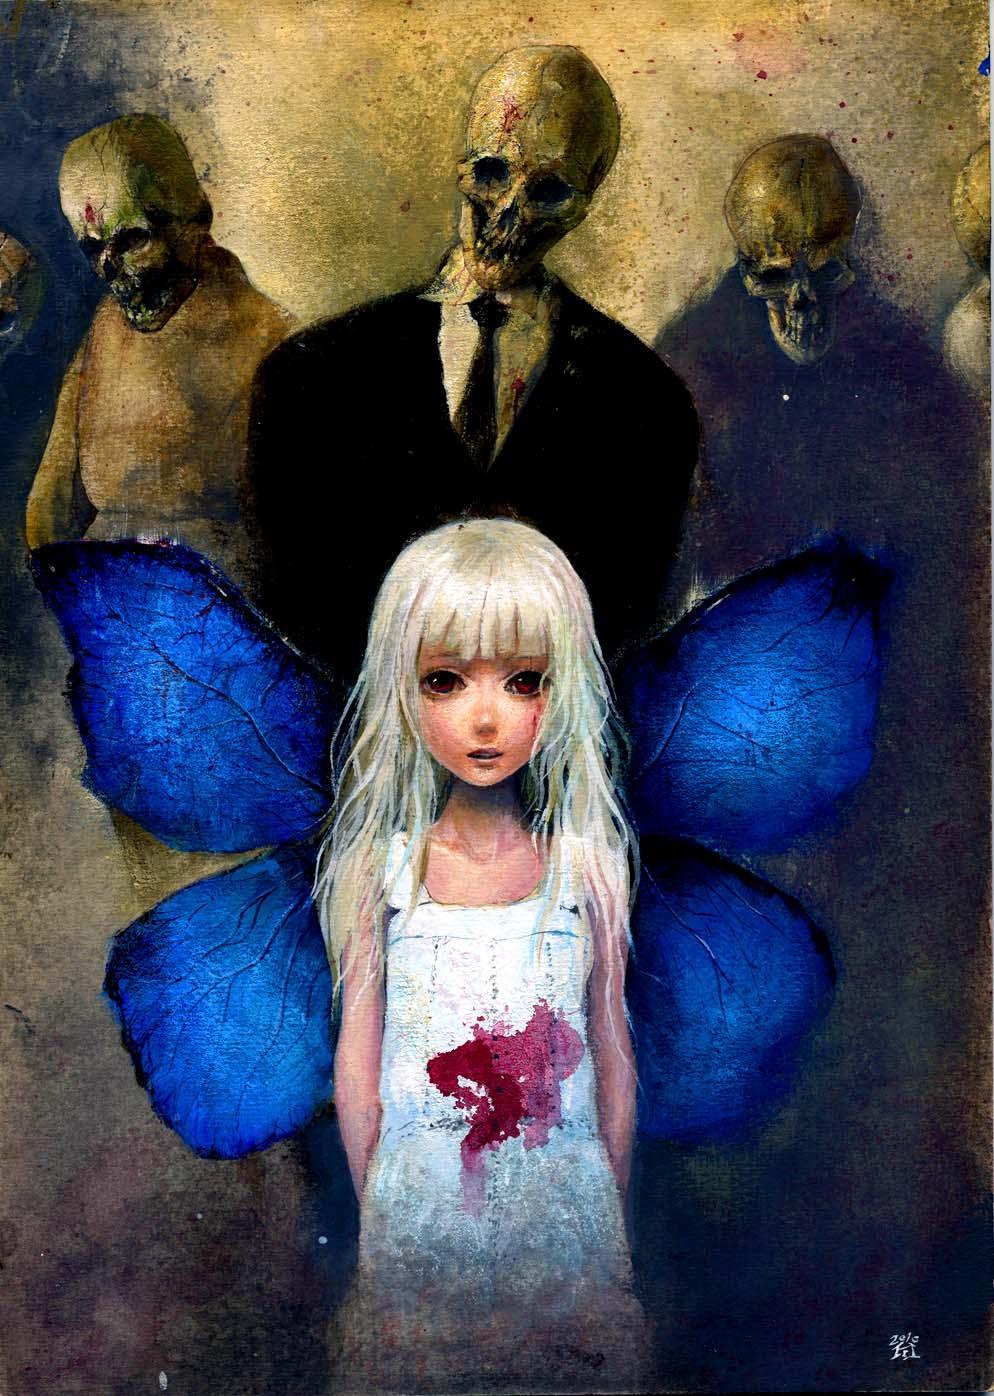 Фото Светловолосая девочка с крыльями бабочки за спиной, с пятном крови на платье, за спиной которой стоят трое мужчин, с черепами вместо лиц, art by onmyous (H. W.)